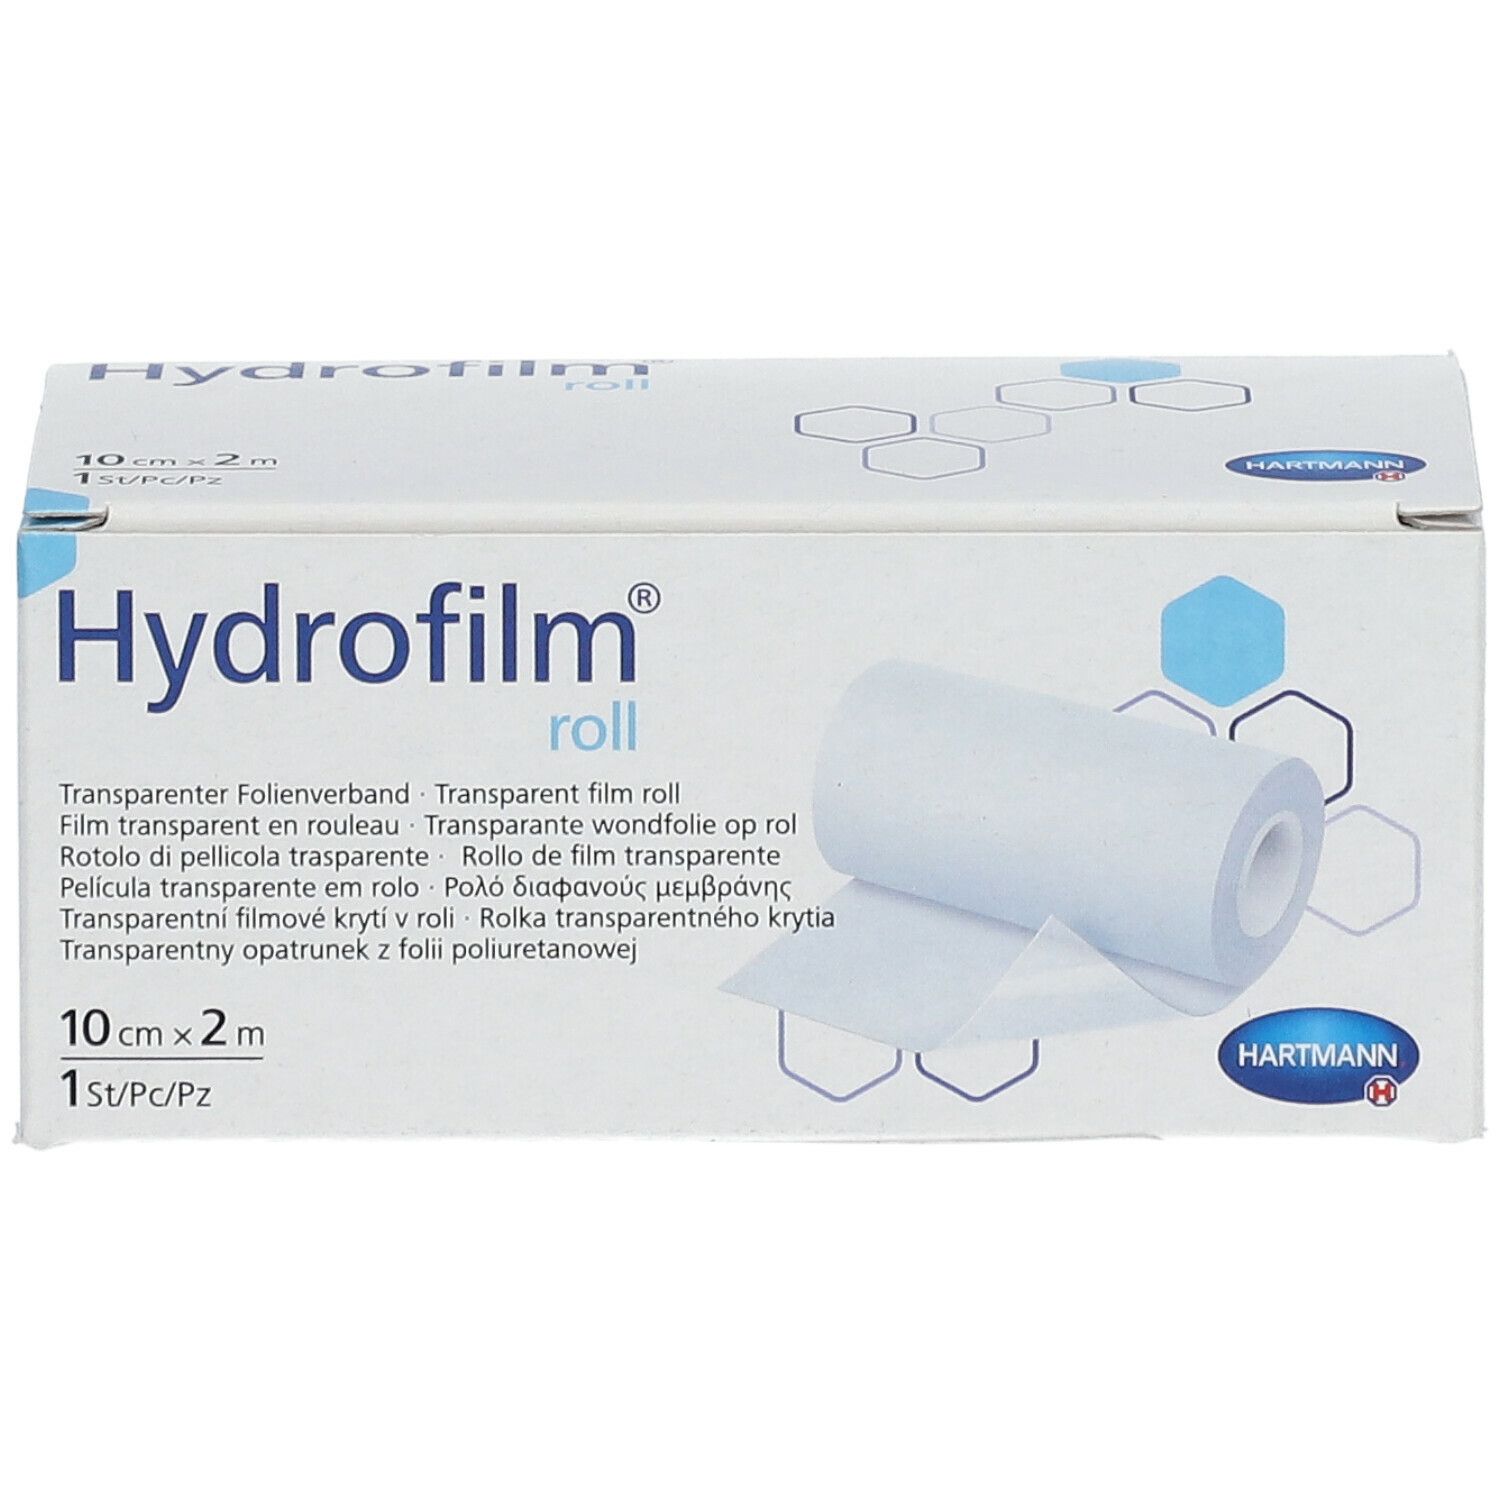 Hydrofilm® roll 2m x 10cm